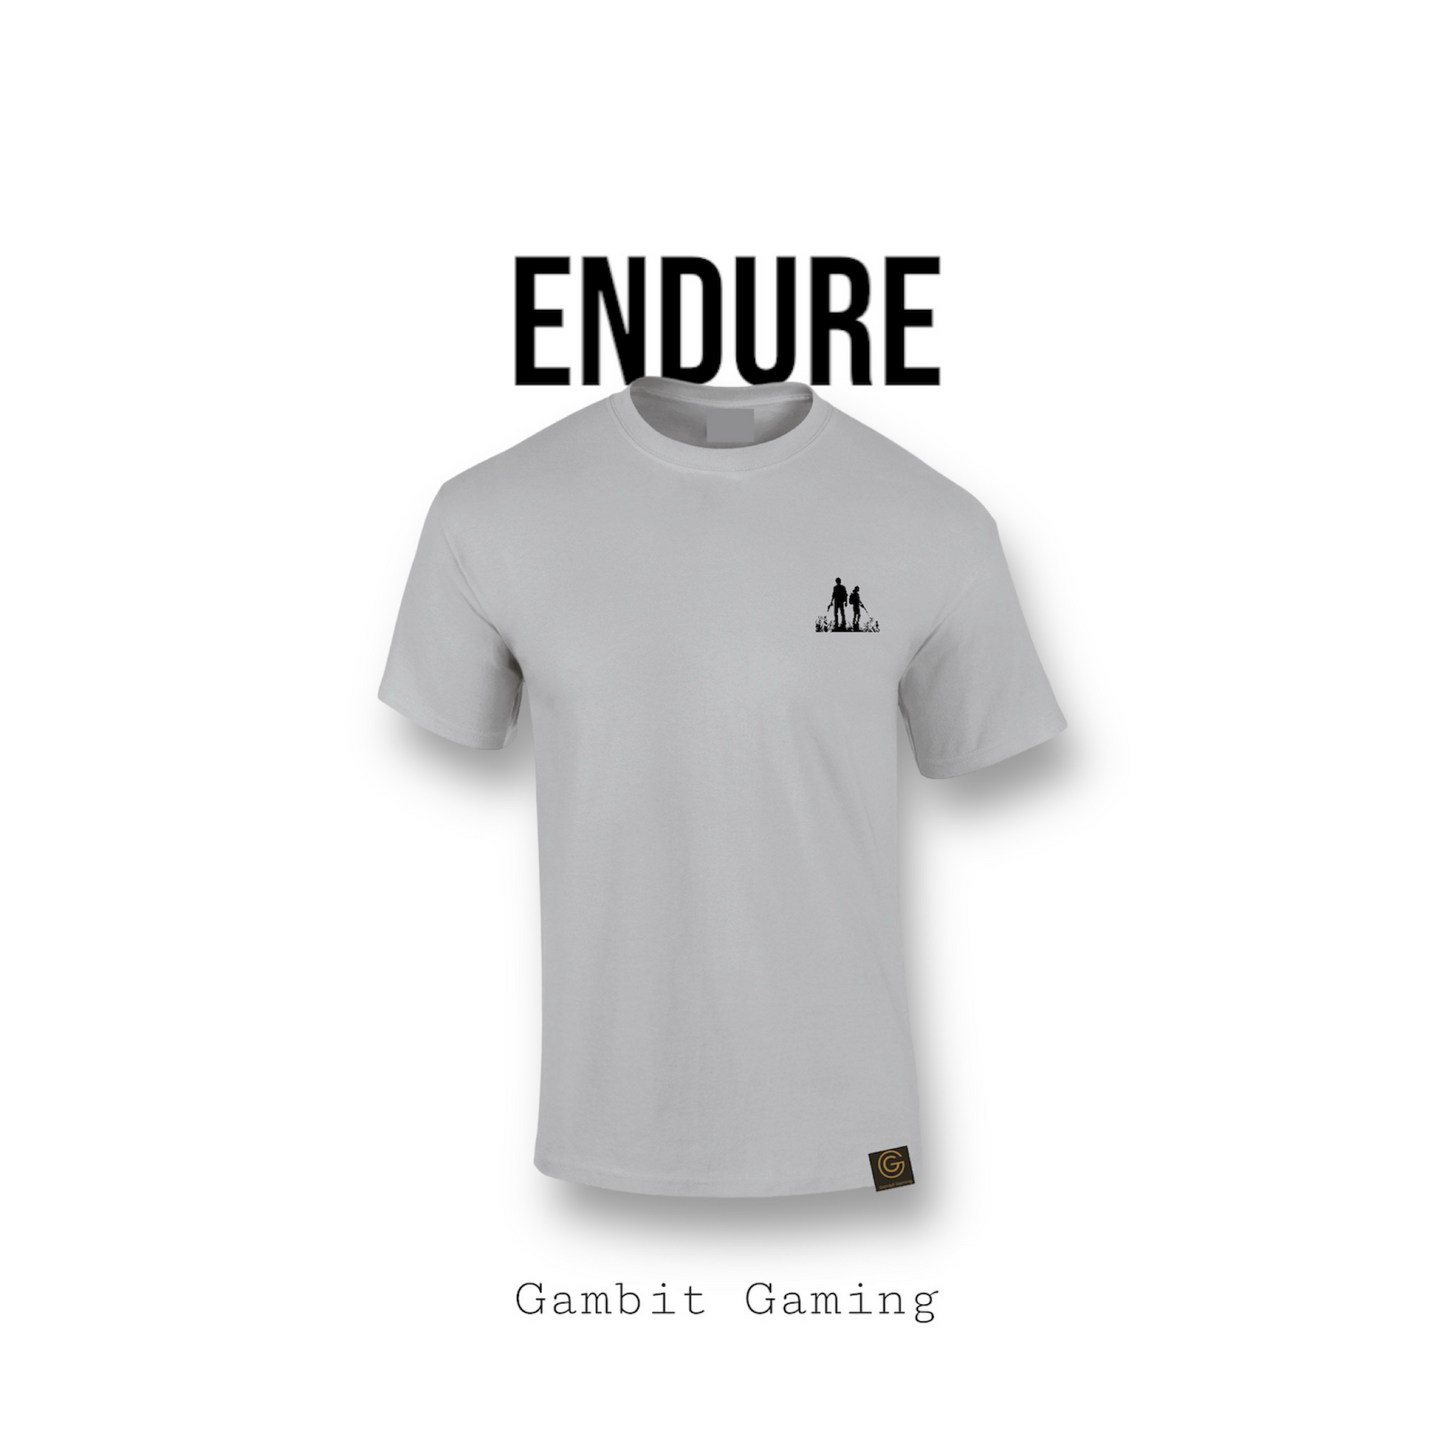 Endure - Gambit Gaming